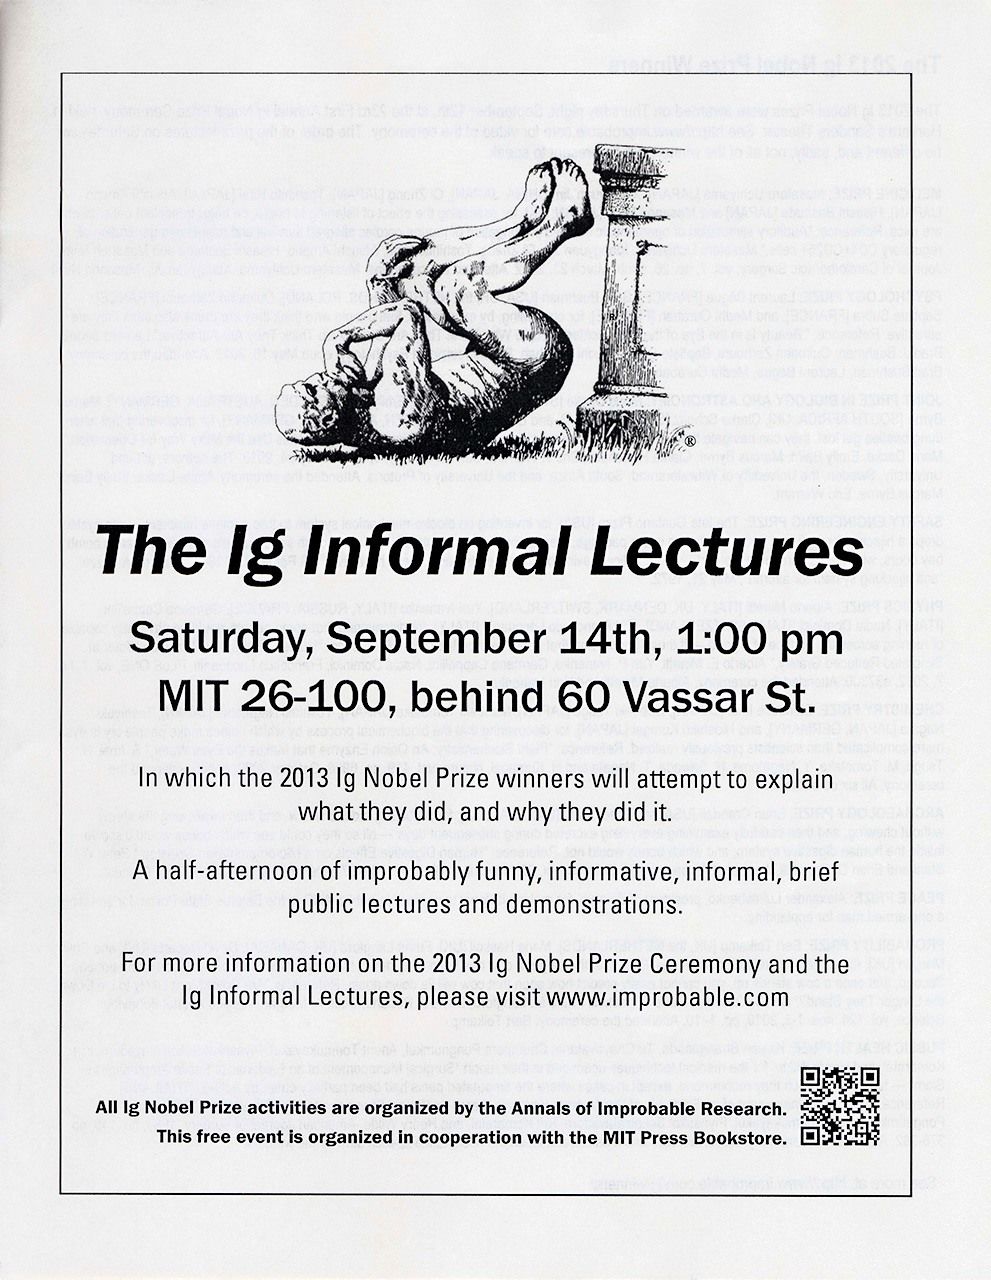 Листовка-объявление о неформальной лекции на следующий день после церемонии награждения, состоявшейся в Массачусетском технологическом институте